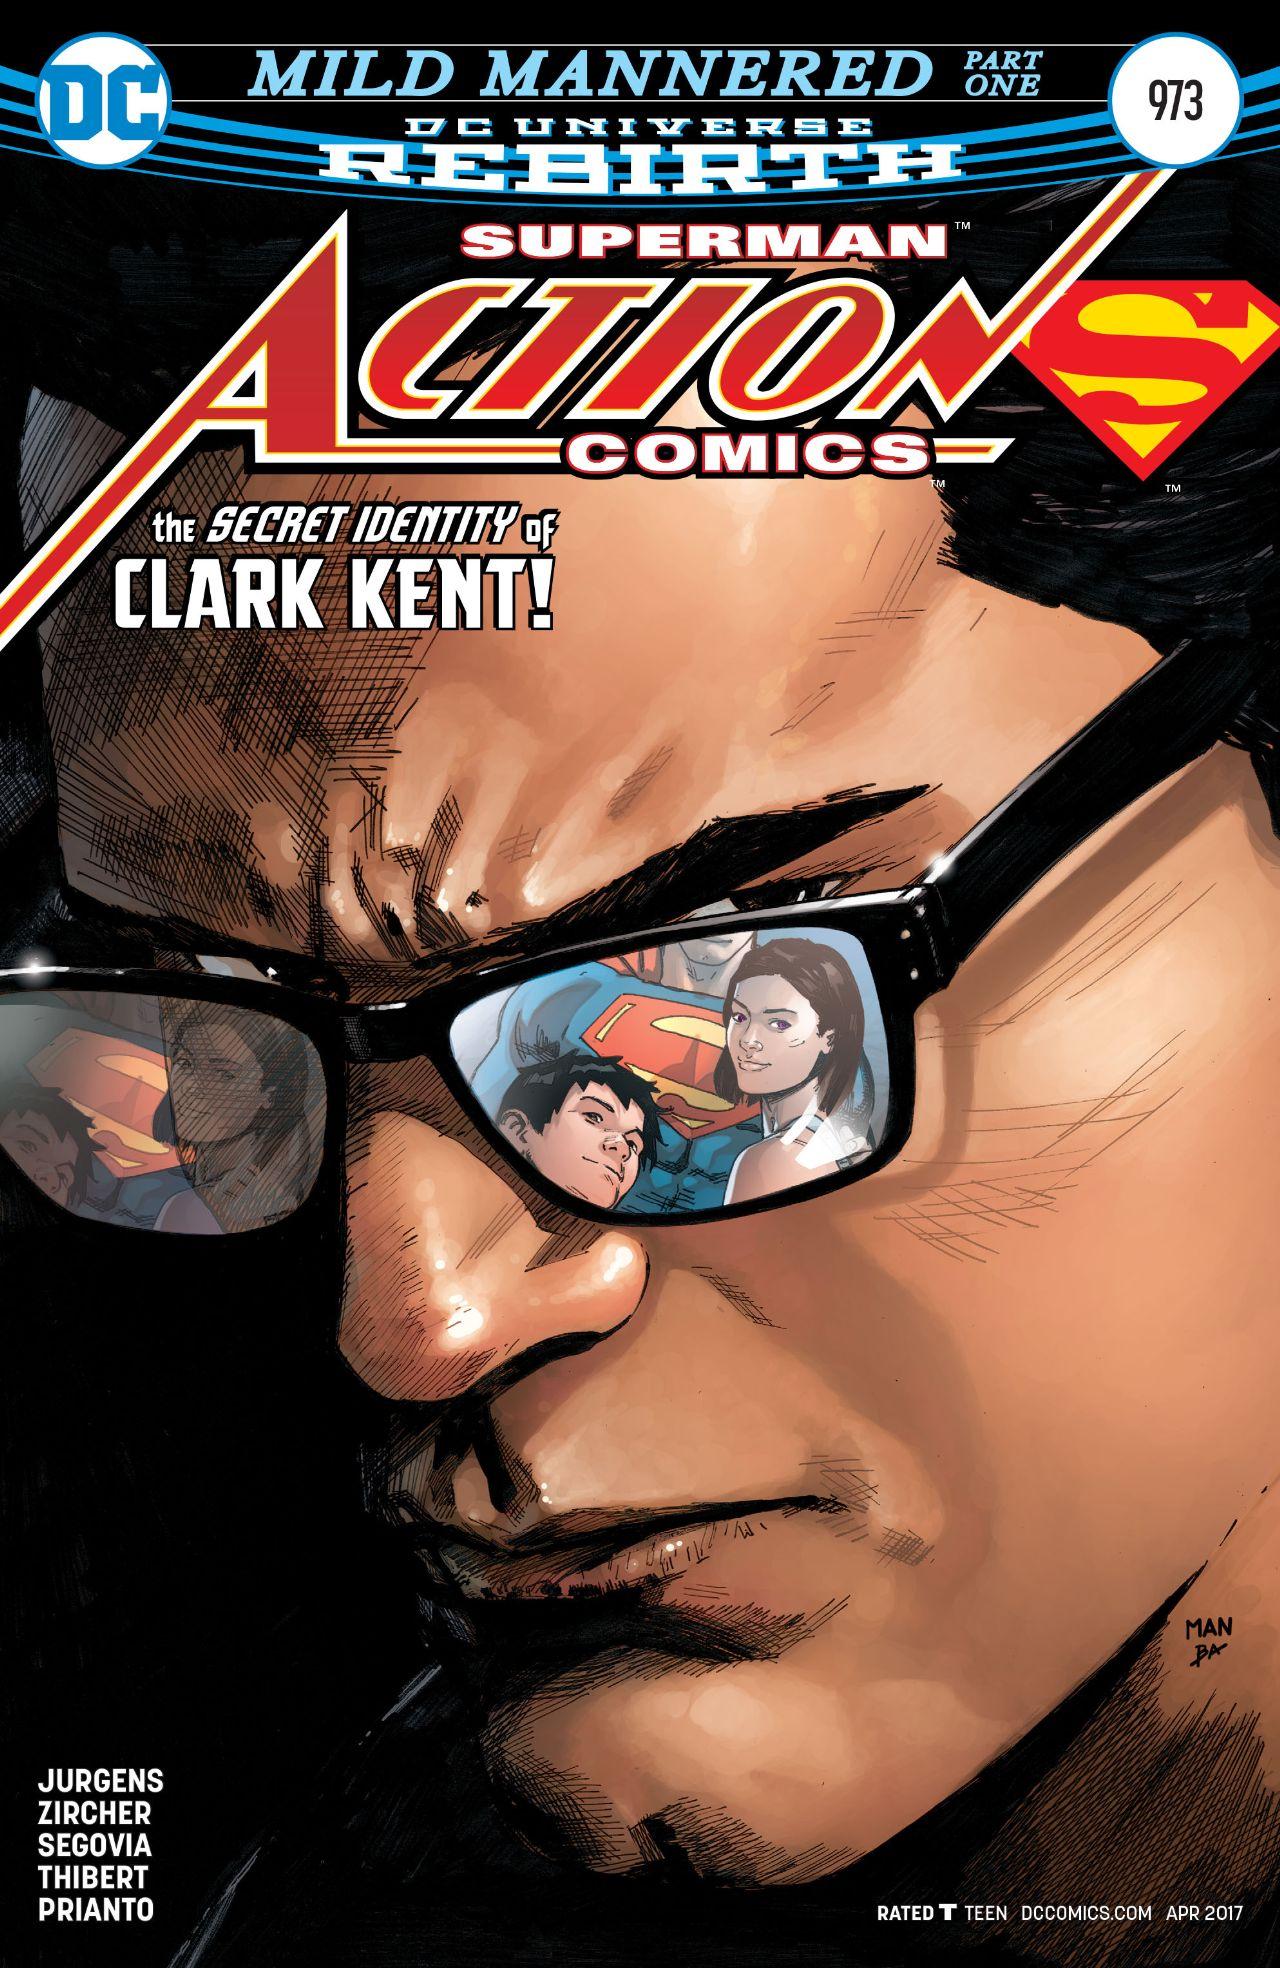 Action Comics Vol. 1 #973